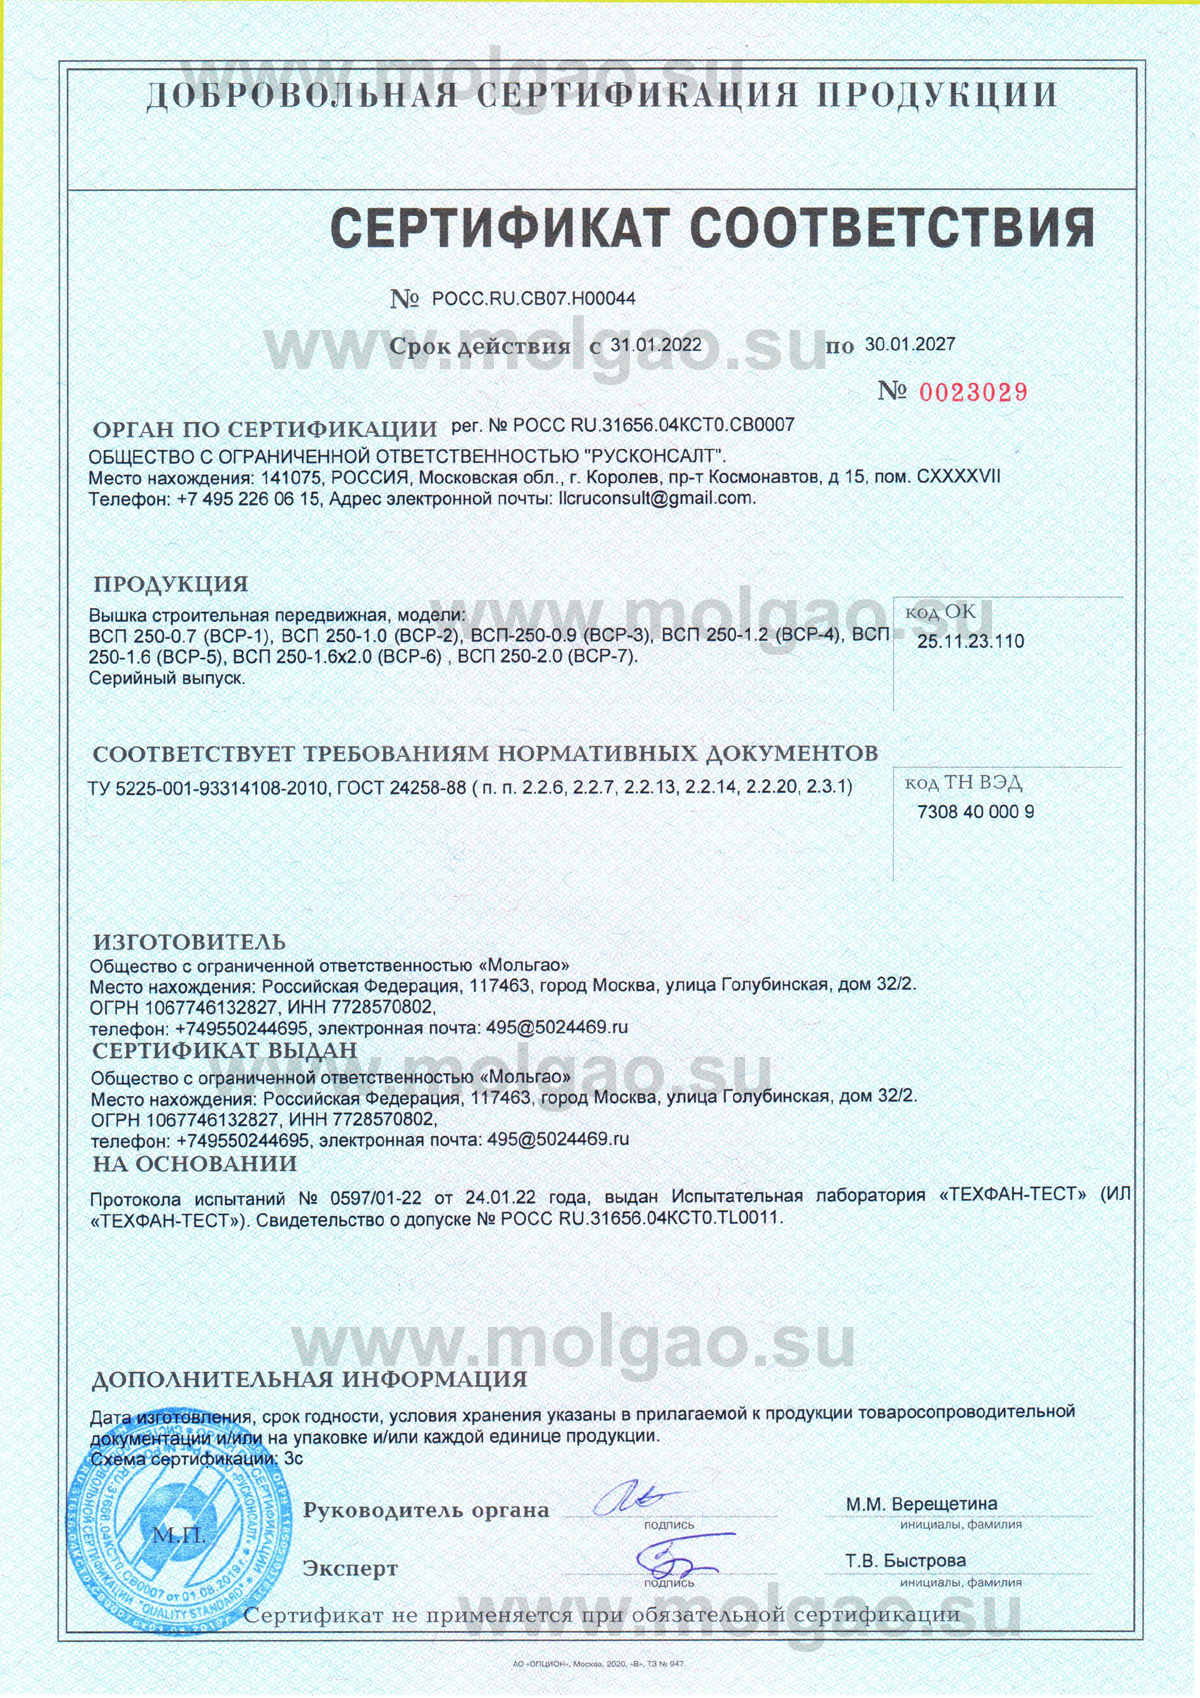 Сертификат на вышки-туры Мольгао ВСП-250 (ВСР)